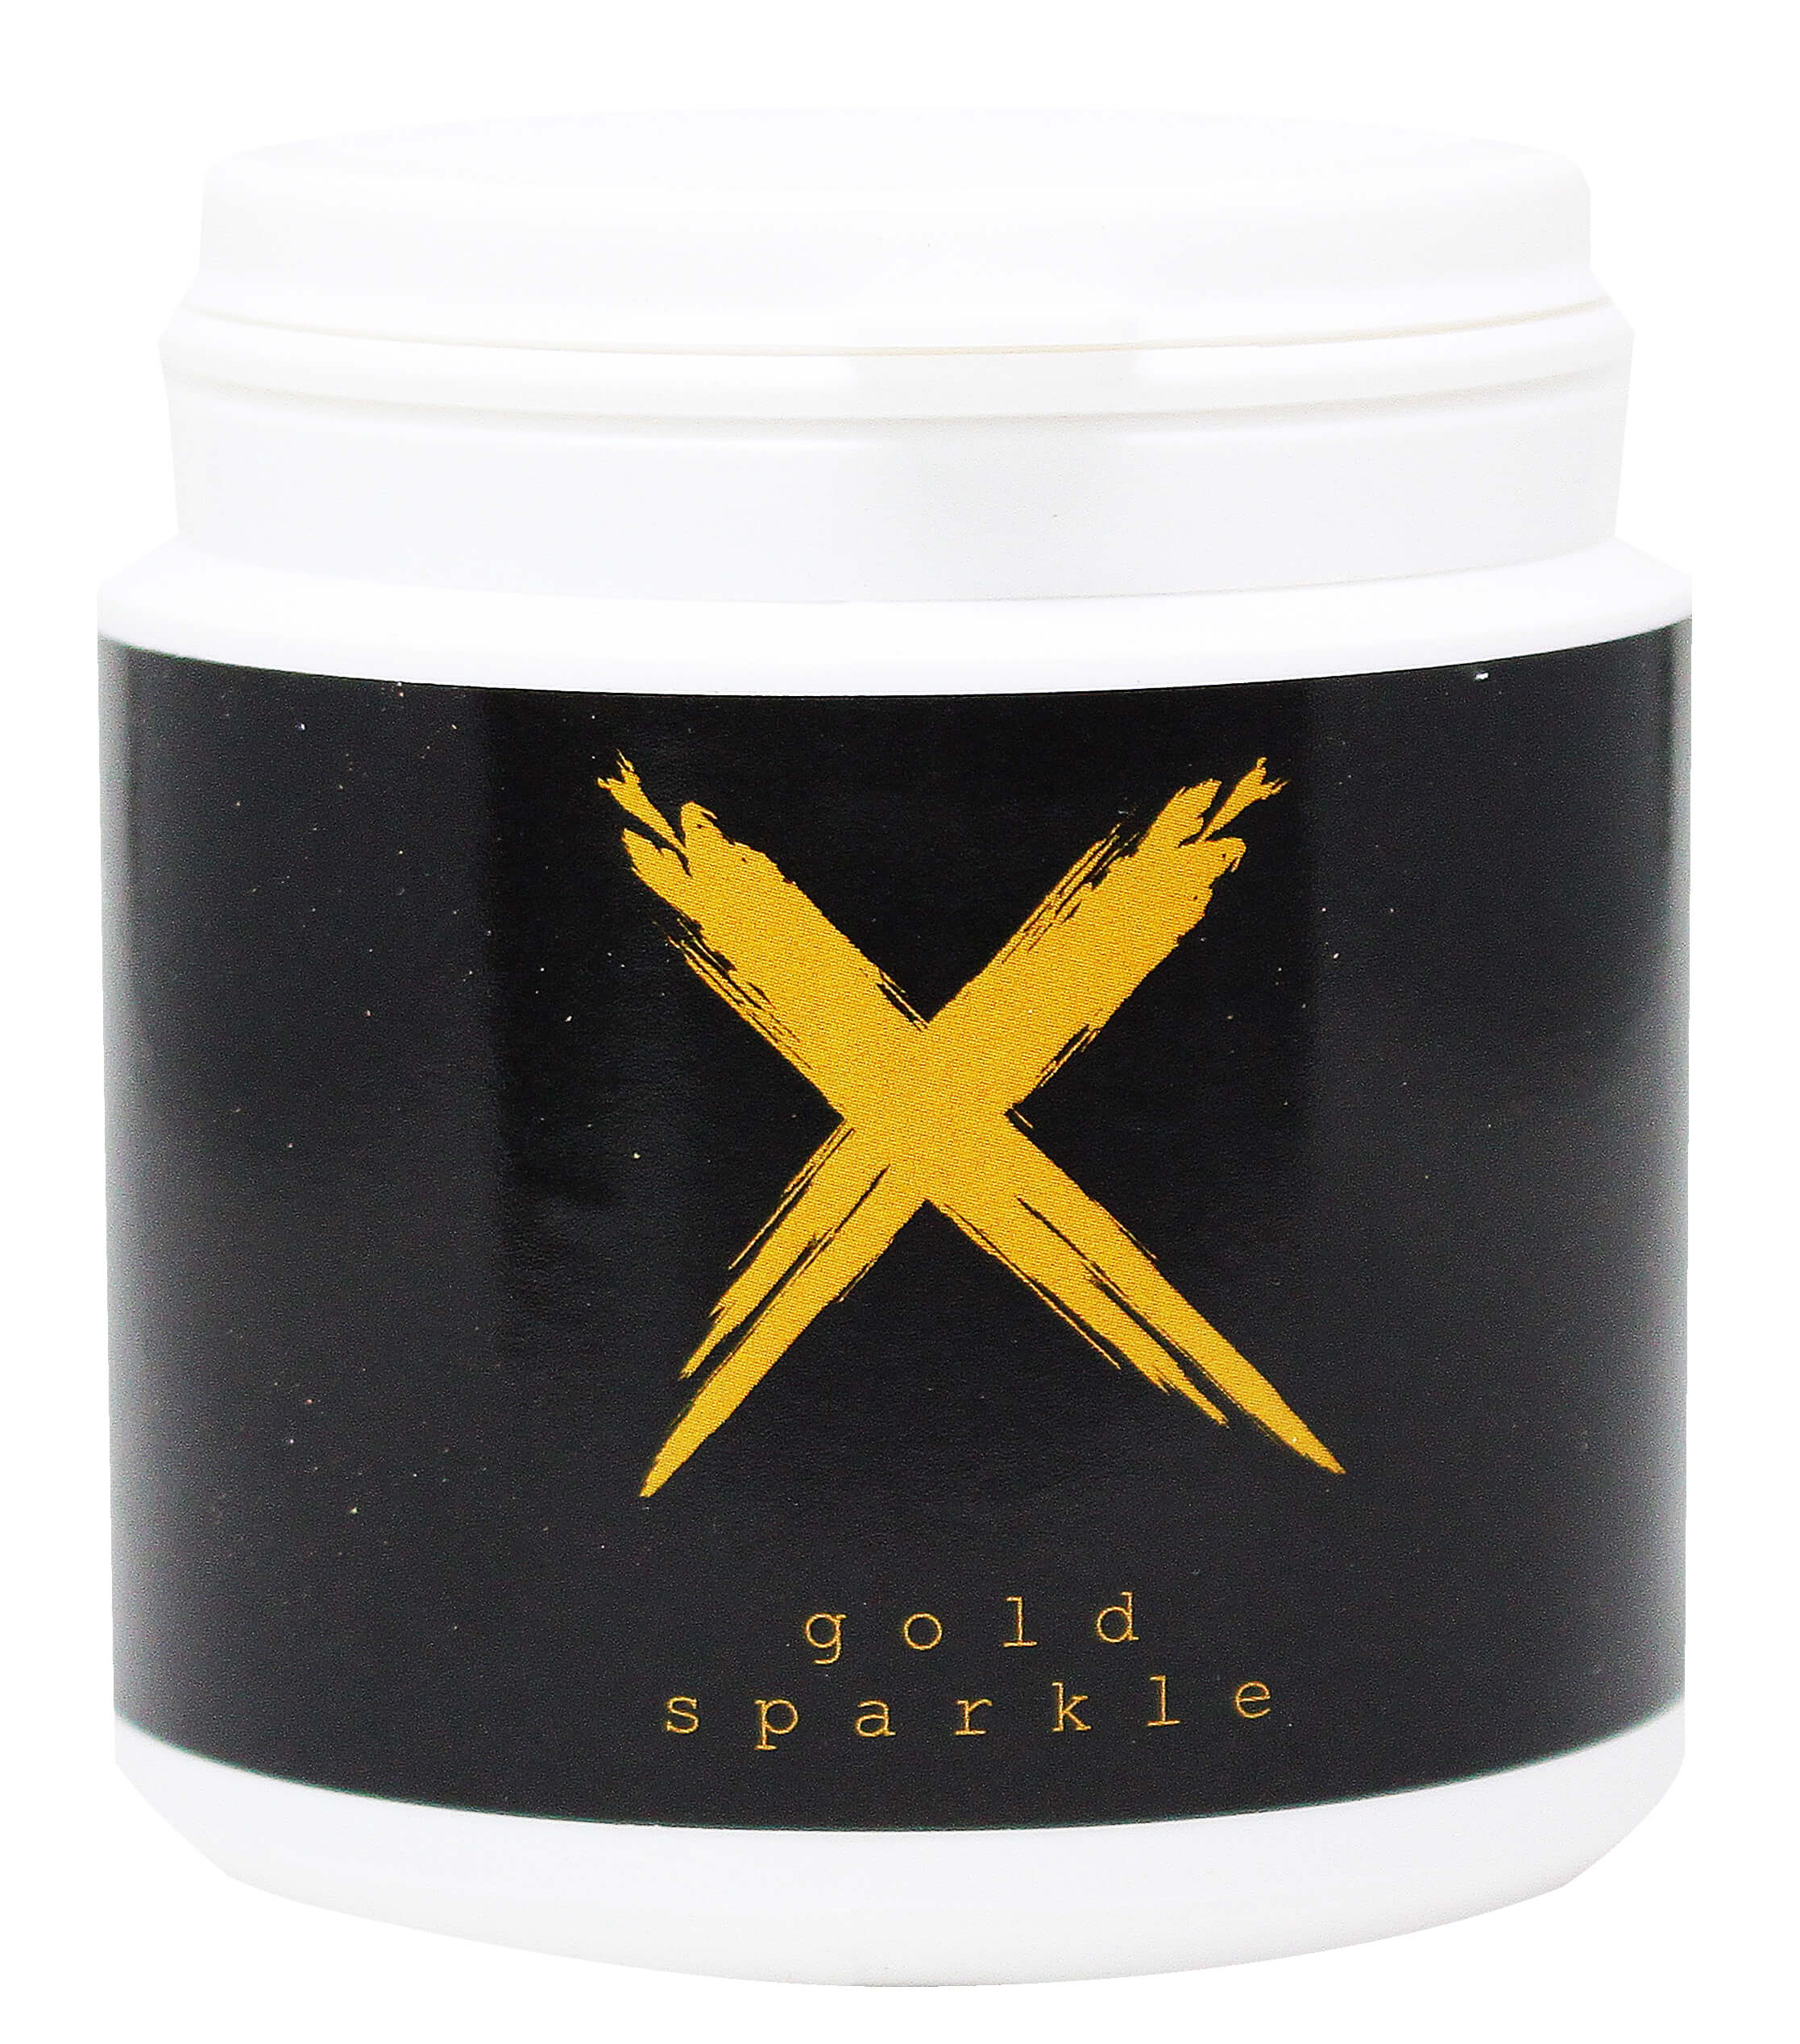 Xschischa Sparkles 50g | Gold Sparkle